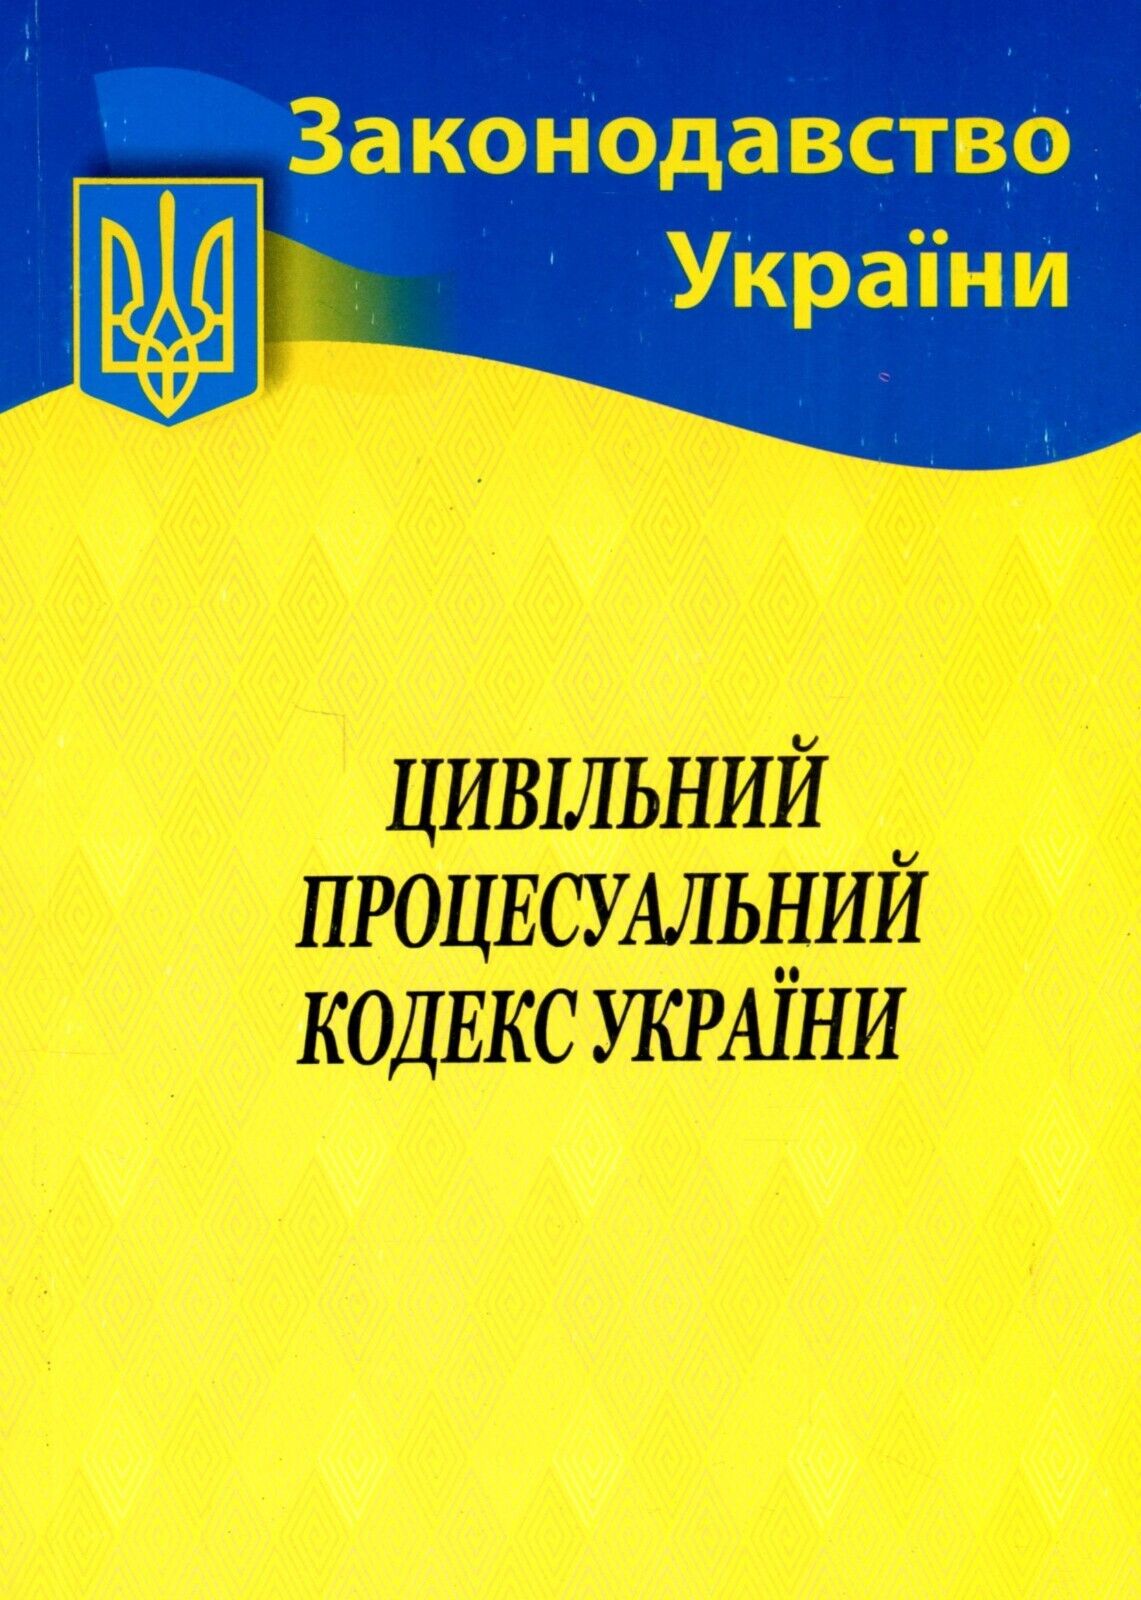 Цивільний процесуальний кодекс України є важливим документом для всіх учасників цивільного процесу, включаючи суддів, адвокатів та громадян. Знання ЦПК України є обов